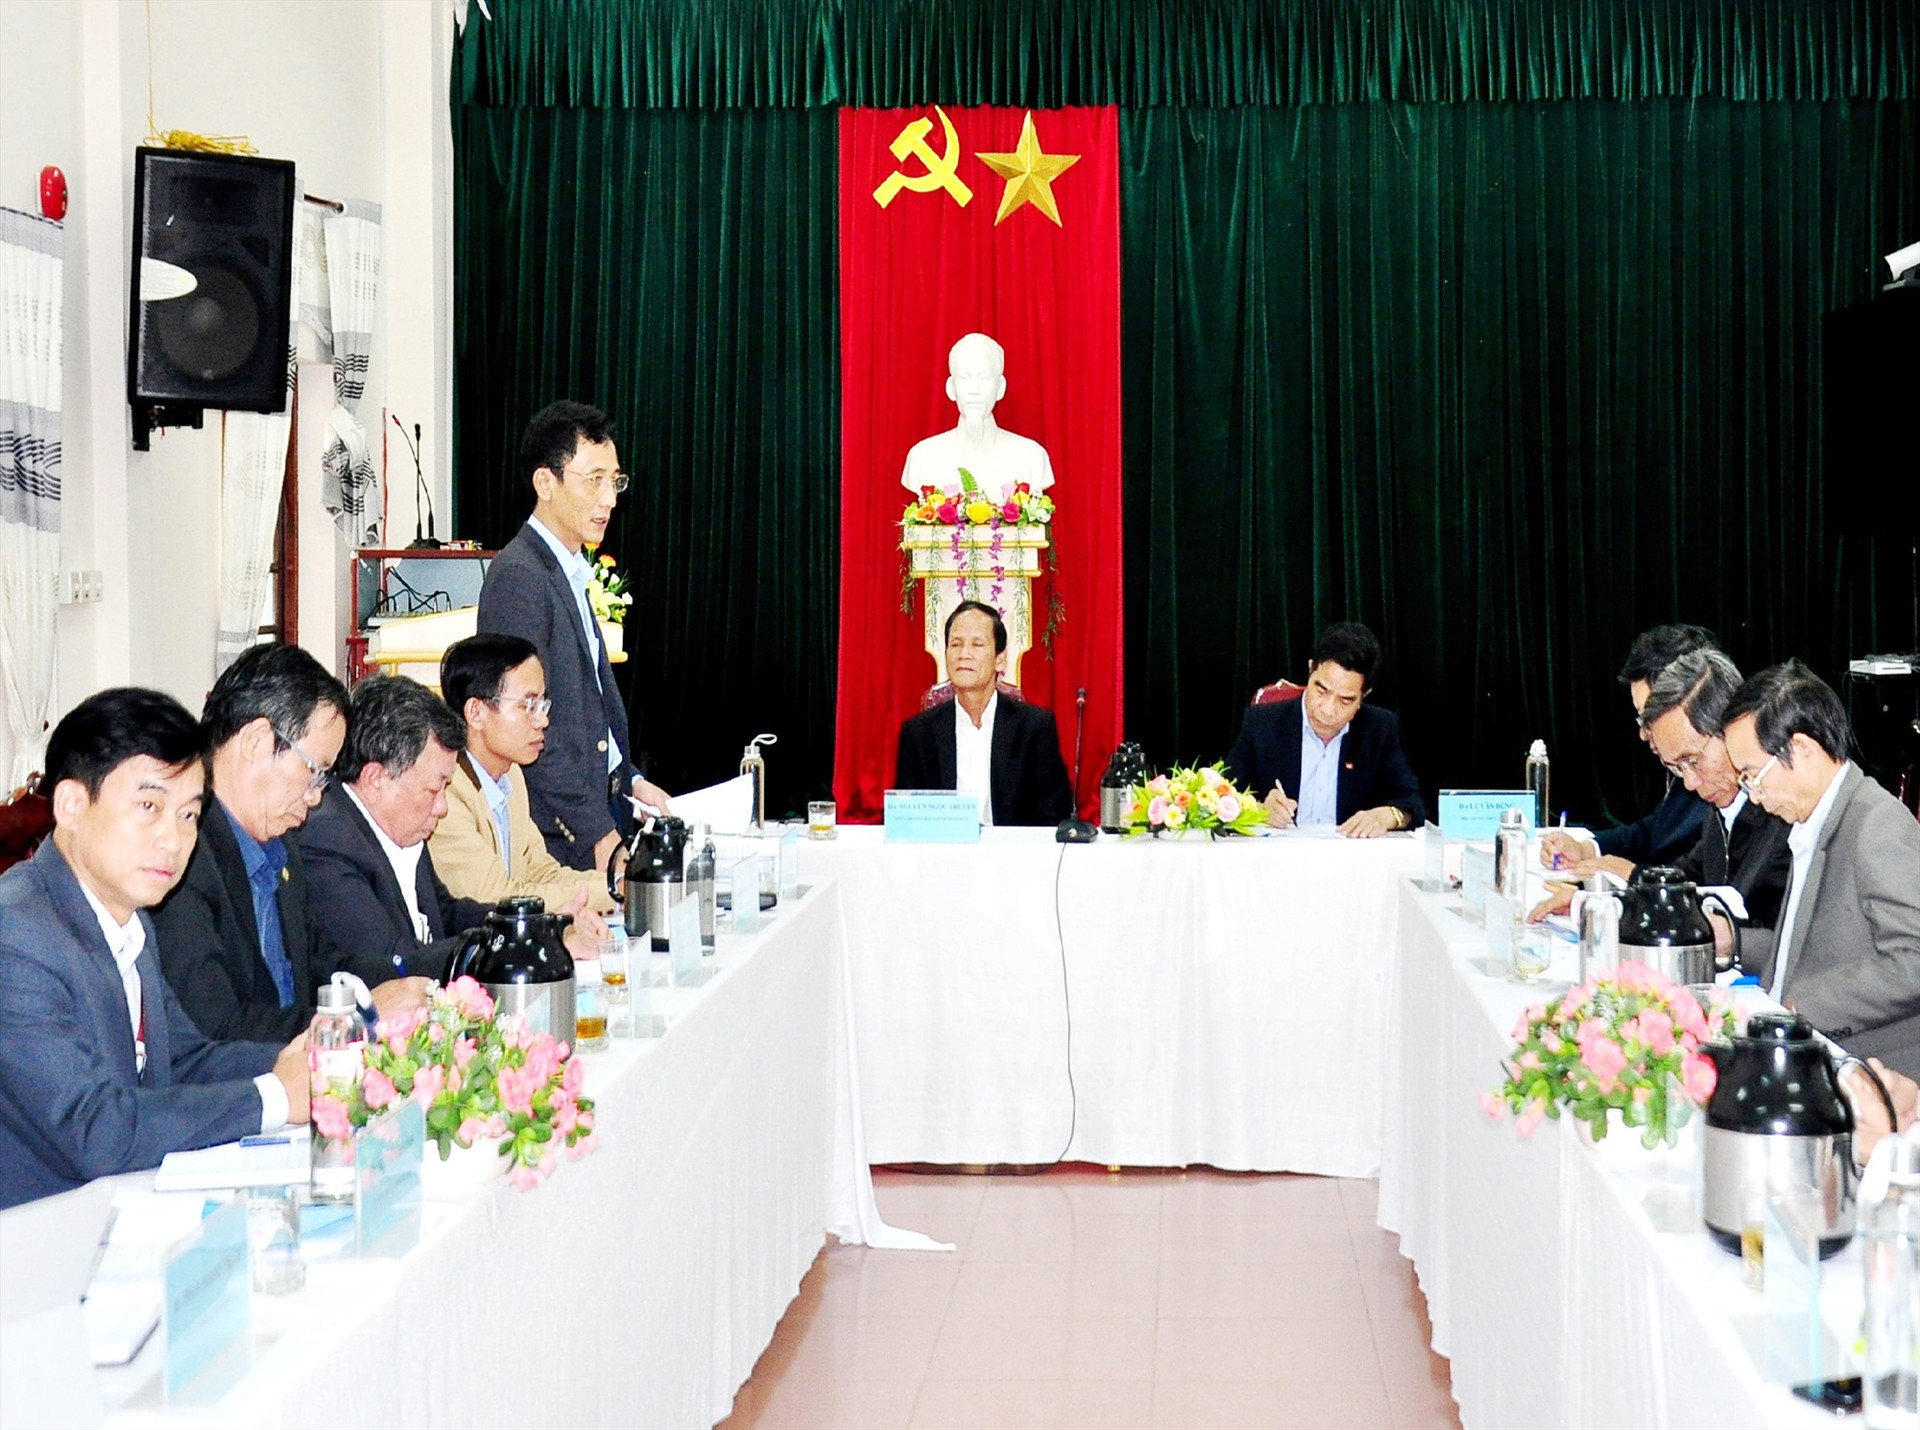 Đoàn công tác của Tỉnh ủy làm việc với Ban Thường vụ Huyện ủy Phú Ninh về công tác chuẩn bị Đại hội Đảng các cấp nhiệm kỳ 2020 - 2025. Ảnh: V.A